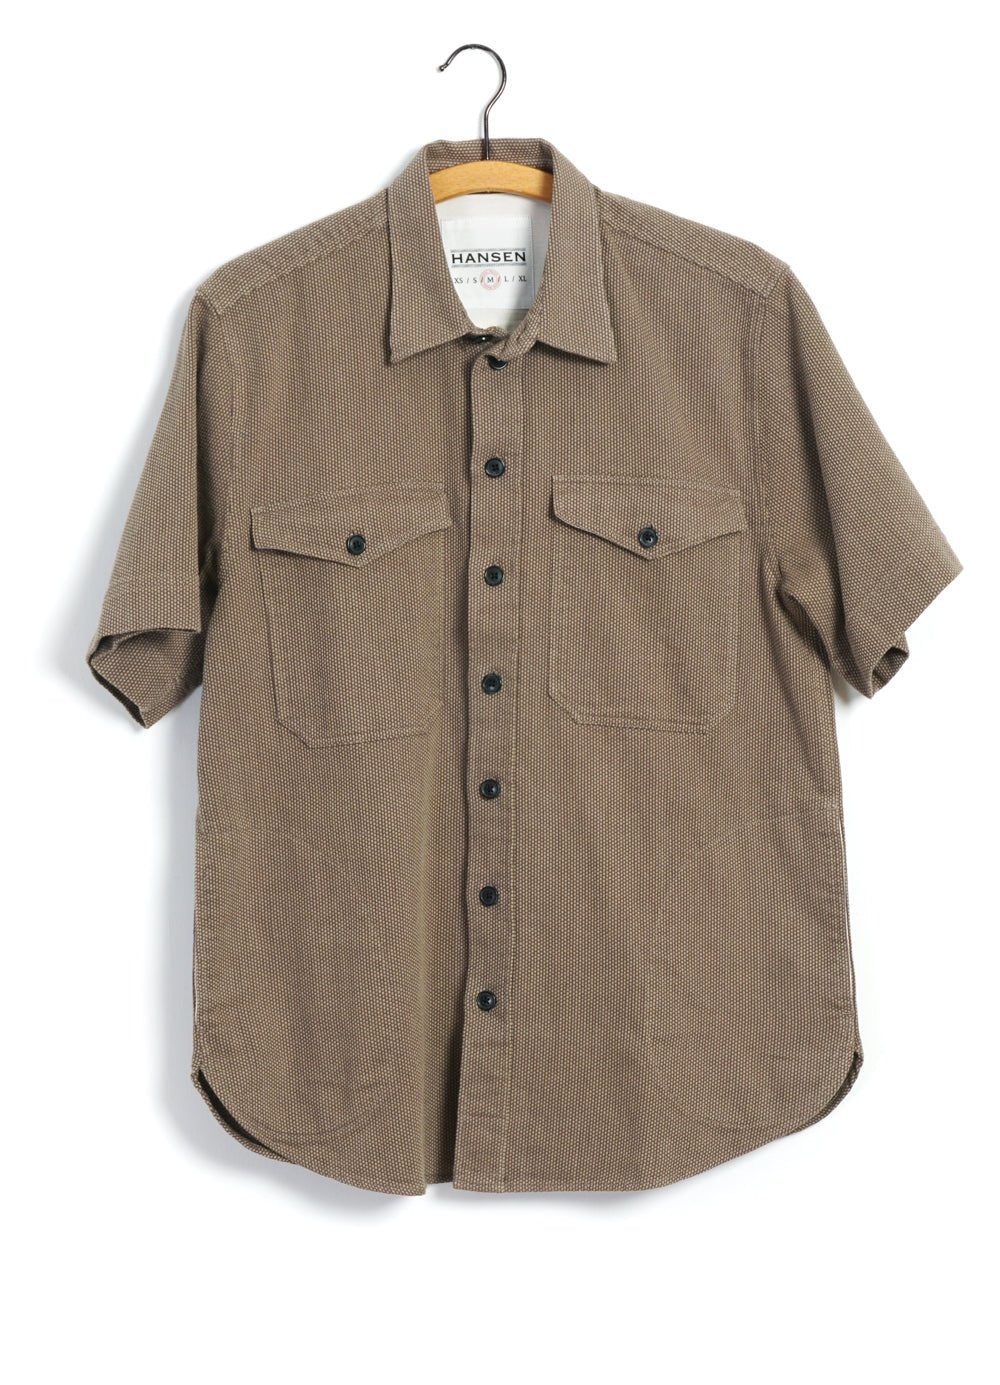 HANSEN GARMENTS - VILLY | Short Sleeve Shirt | Khaki Sashiko - HANSEN Garments